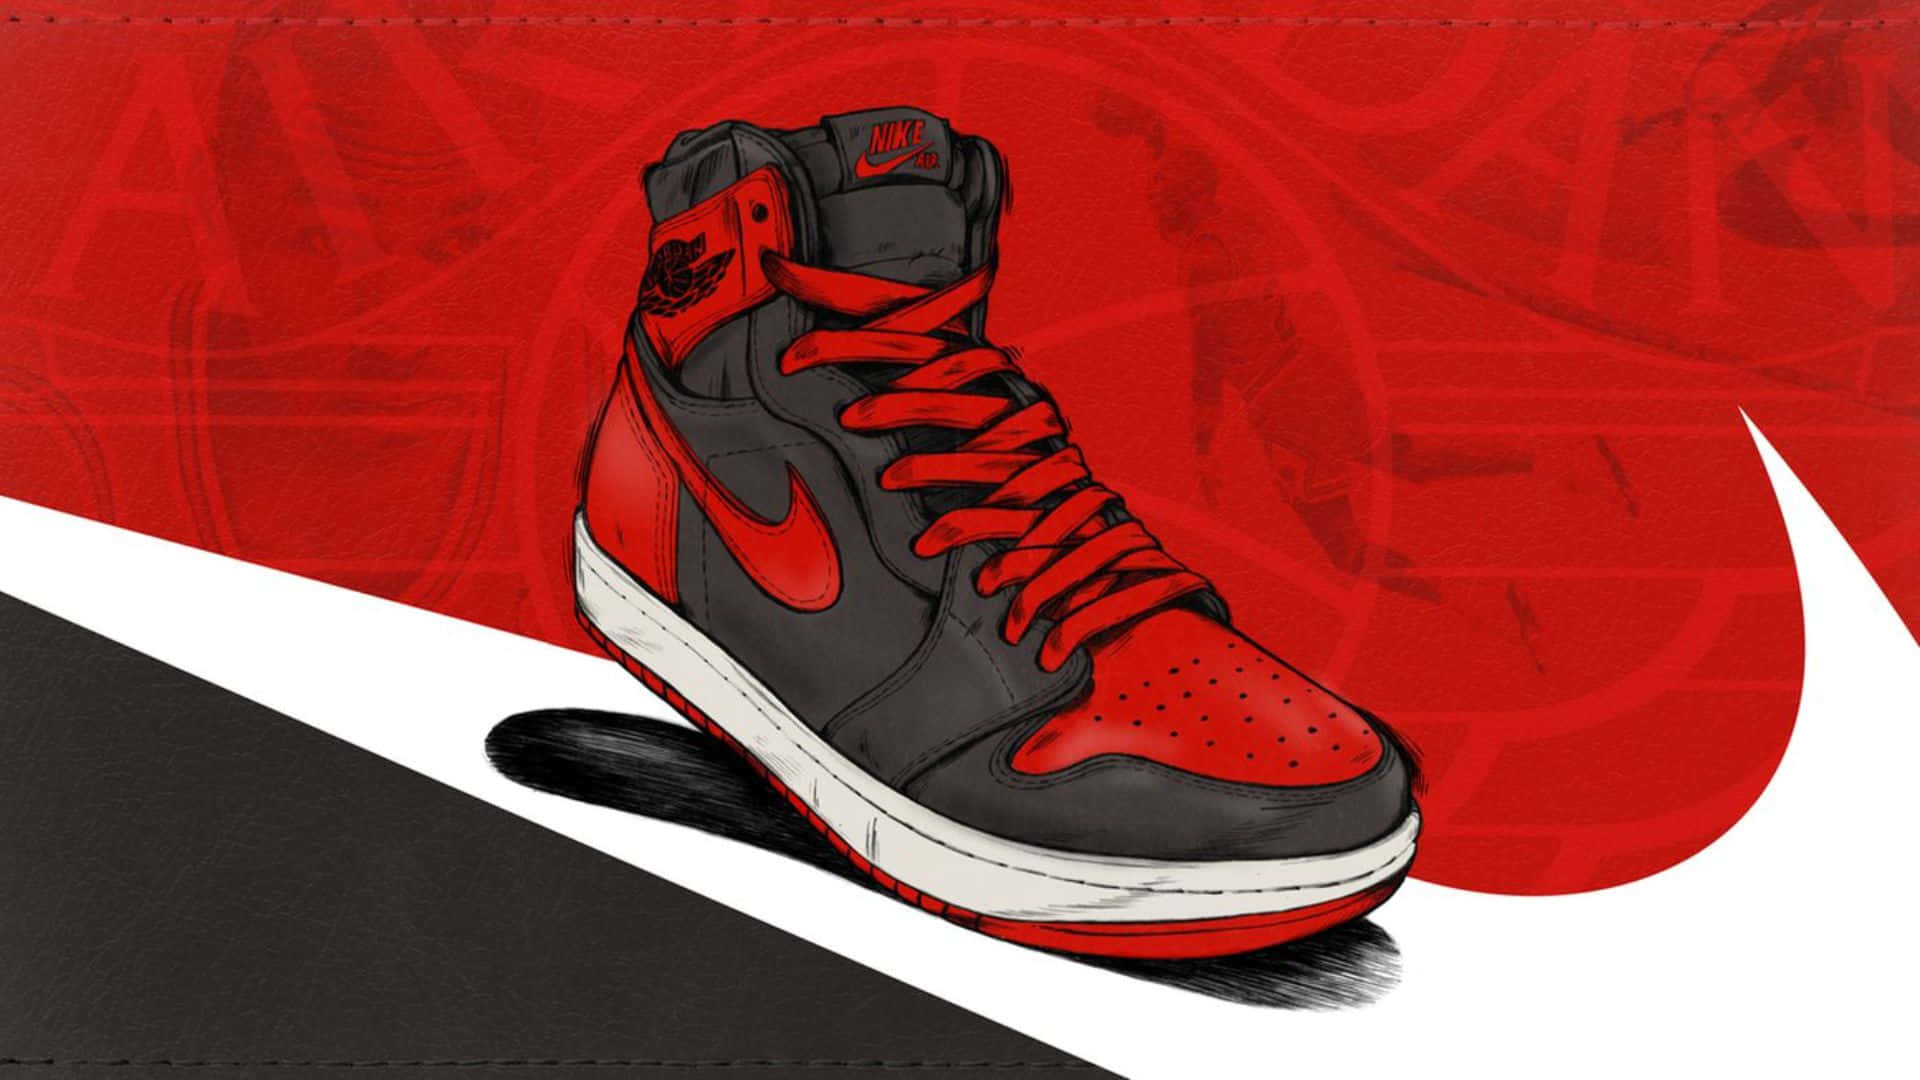 Animeret Nike Jordan Air 1 Sko Wallpaper